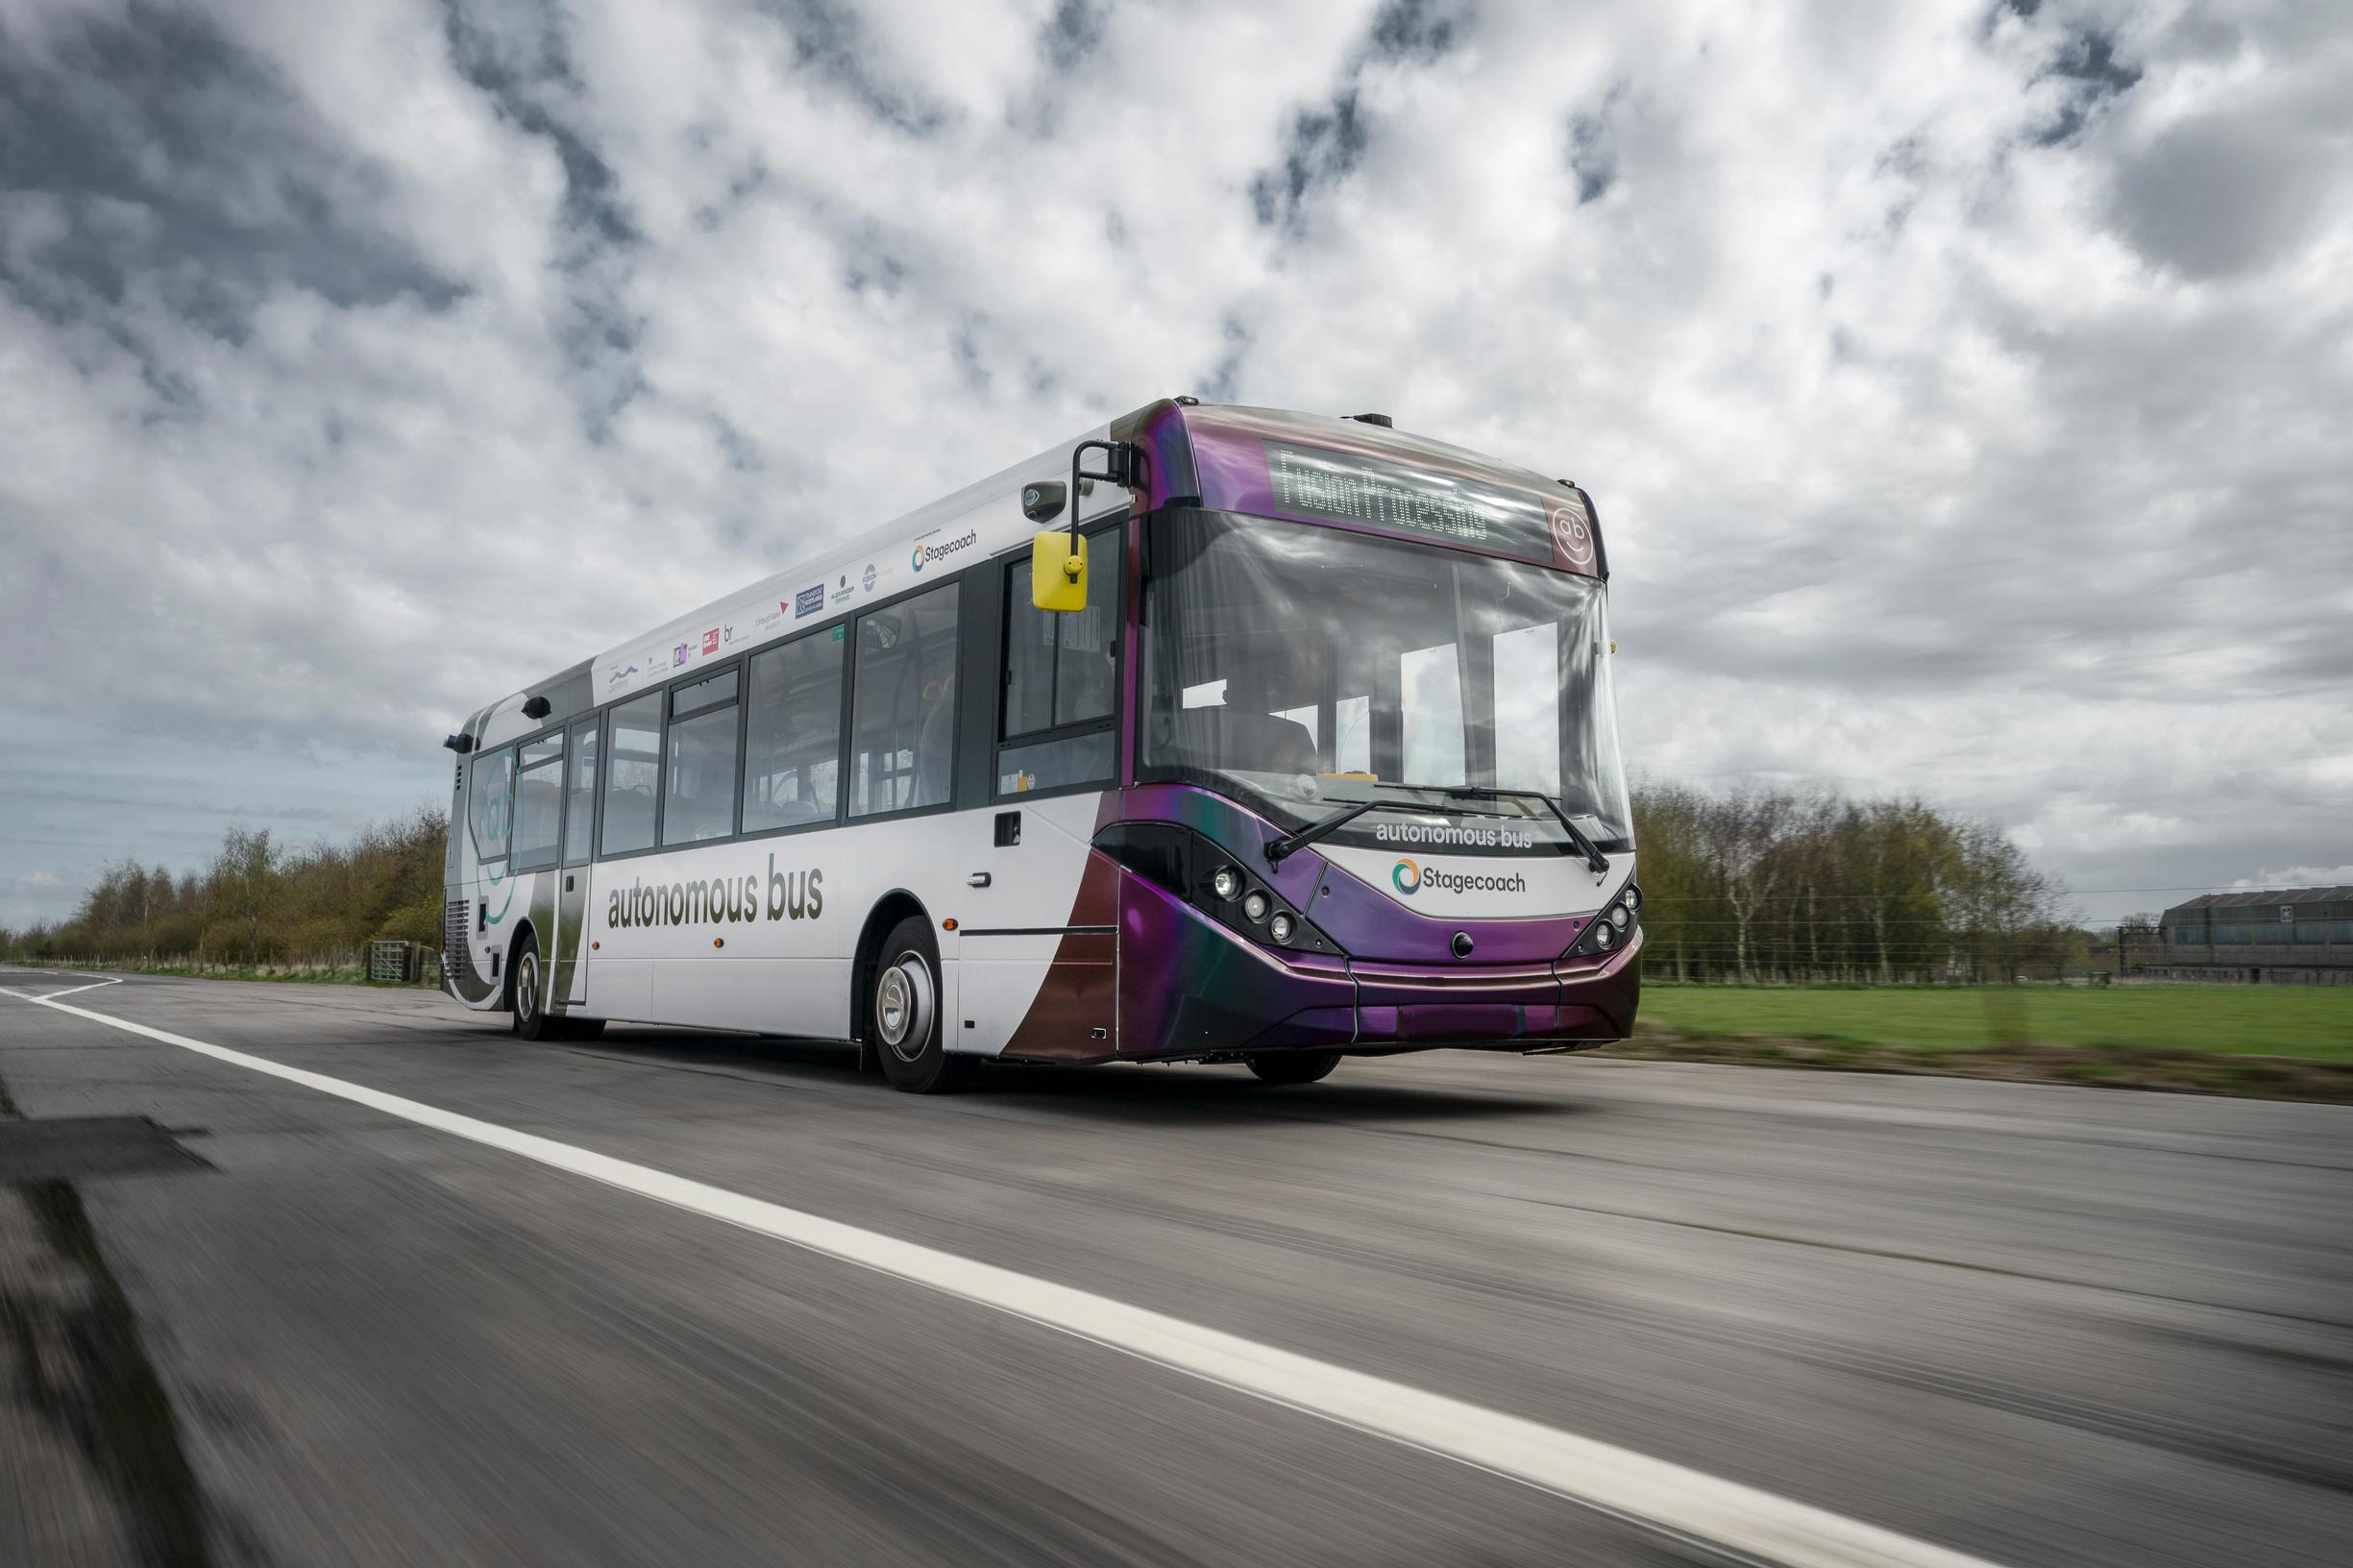 Self-driving bus trials underway in Scotland